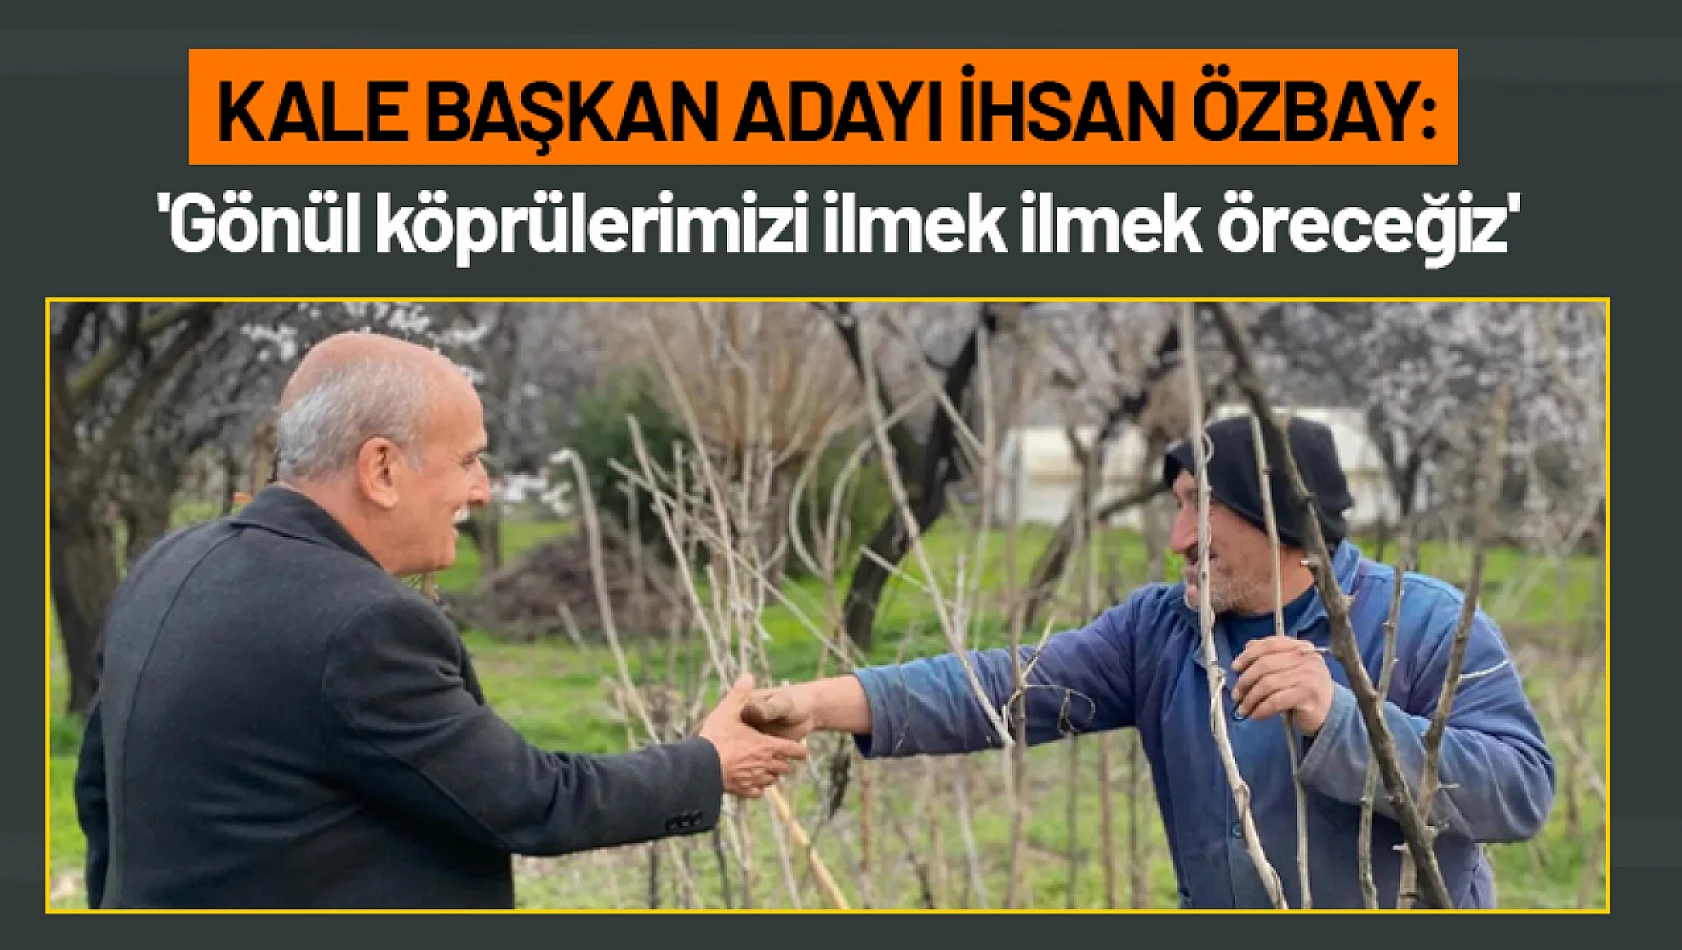 İhsan Özbay: 'Gönül köprülerimizi ilmek ilmek öreceğiz'